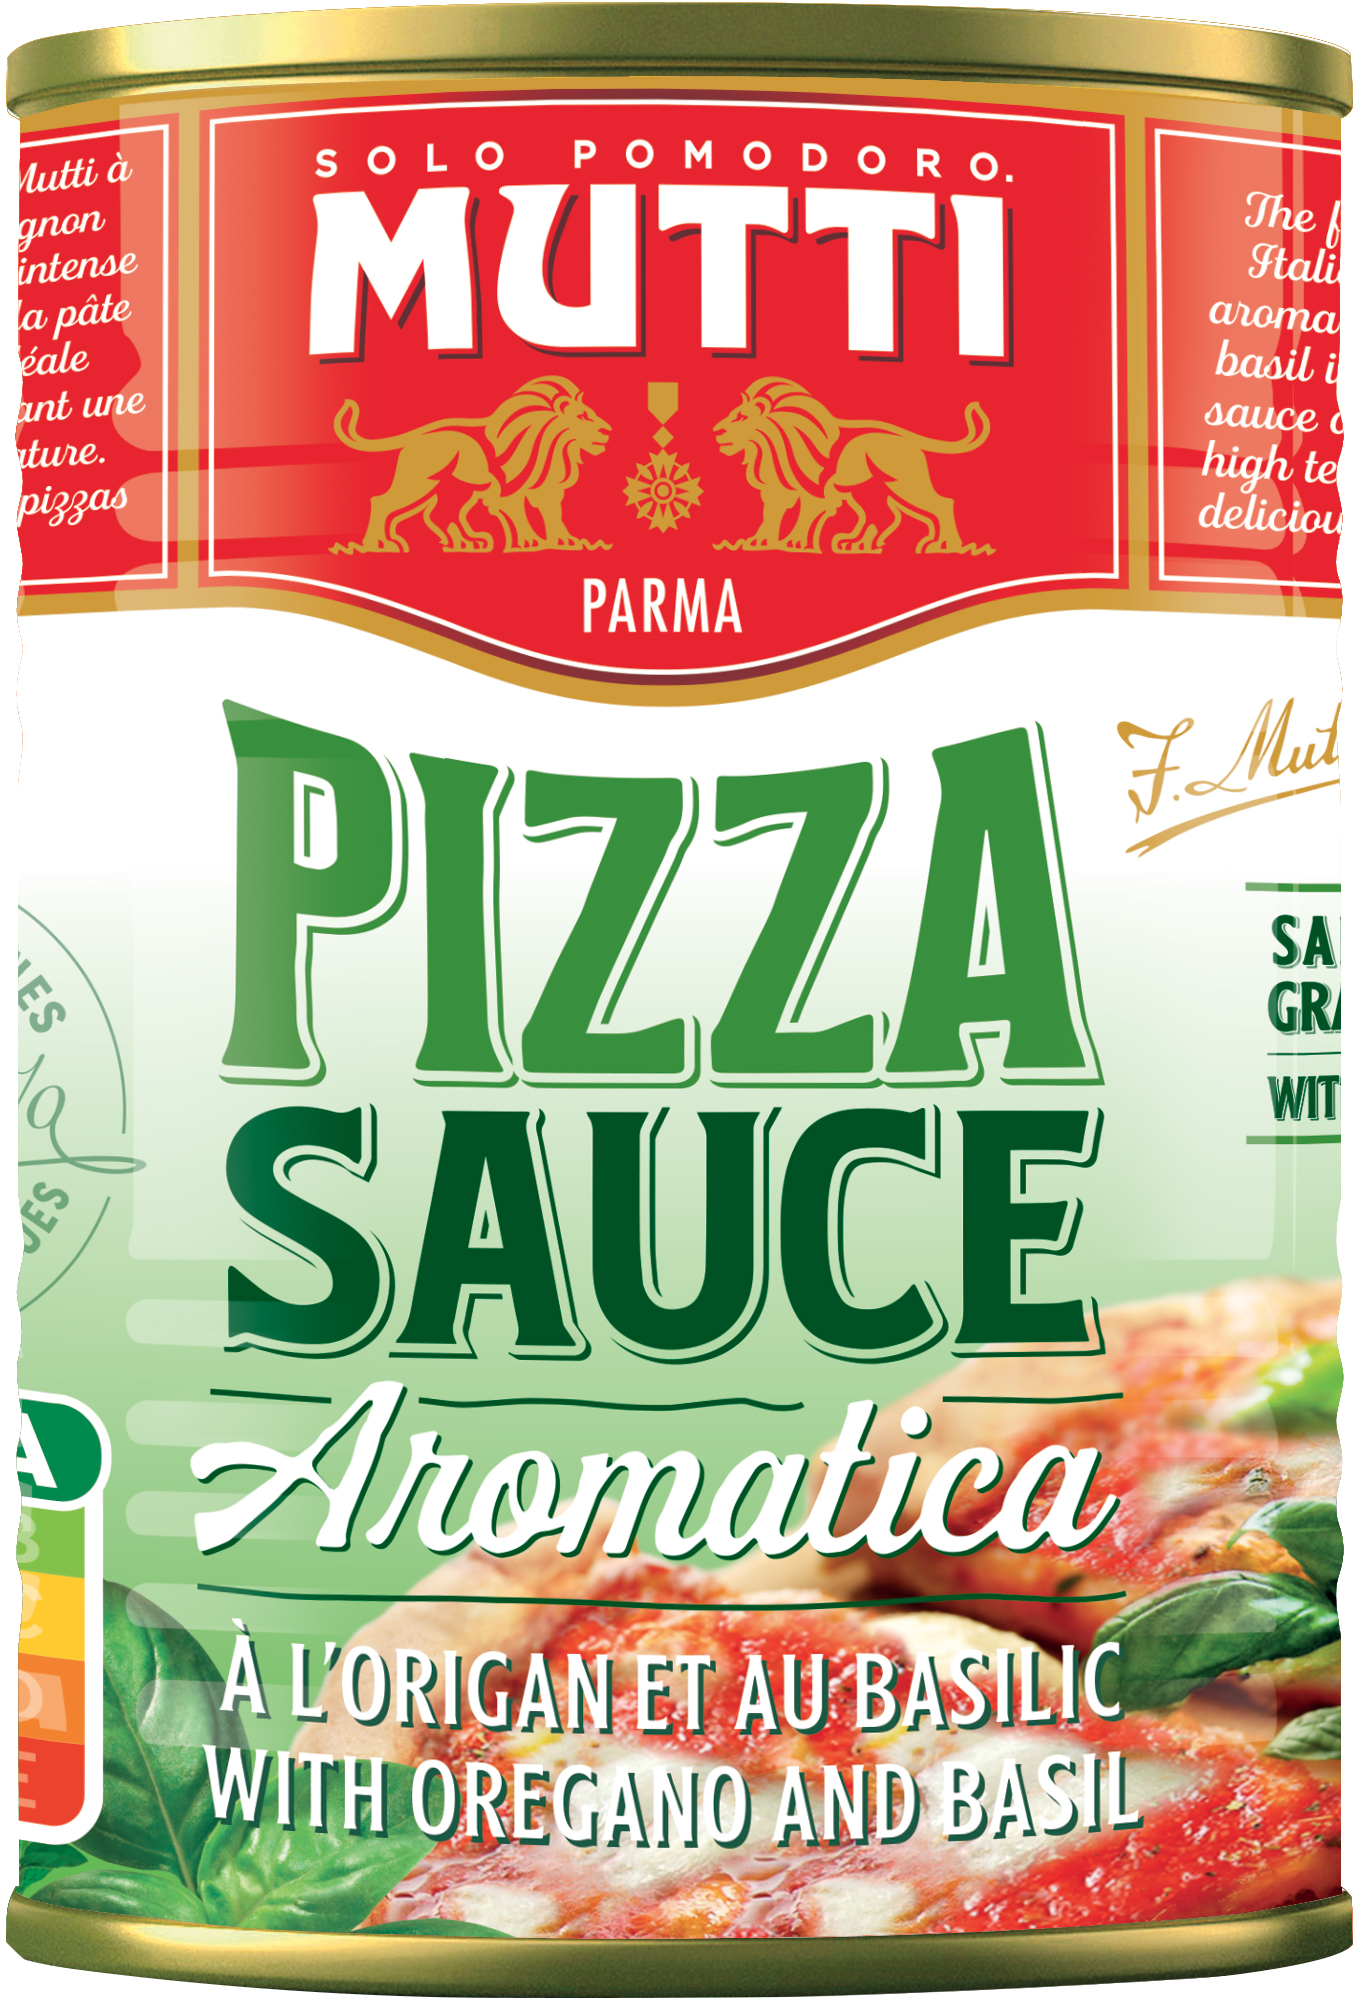 mutti томатный соус для пиццы ароматизированный 400 г фото 6